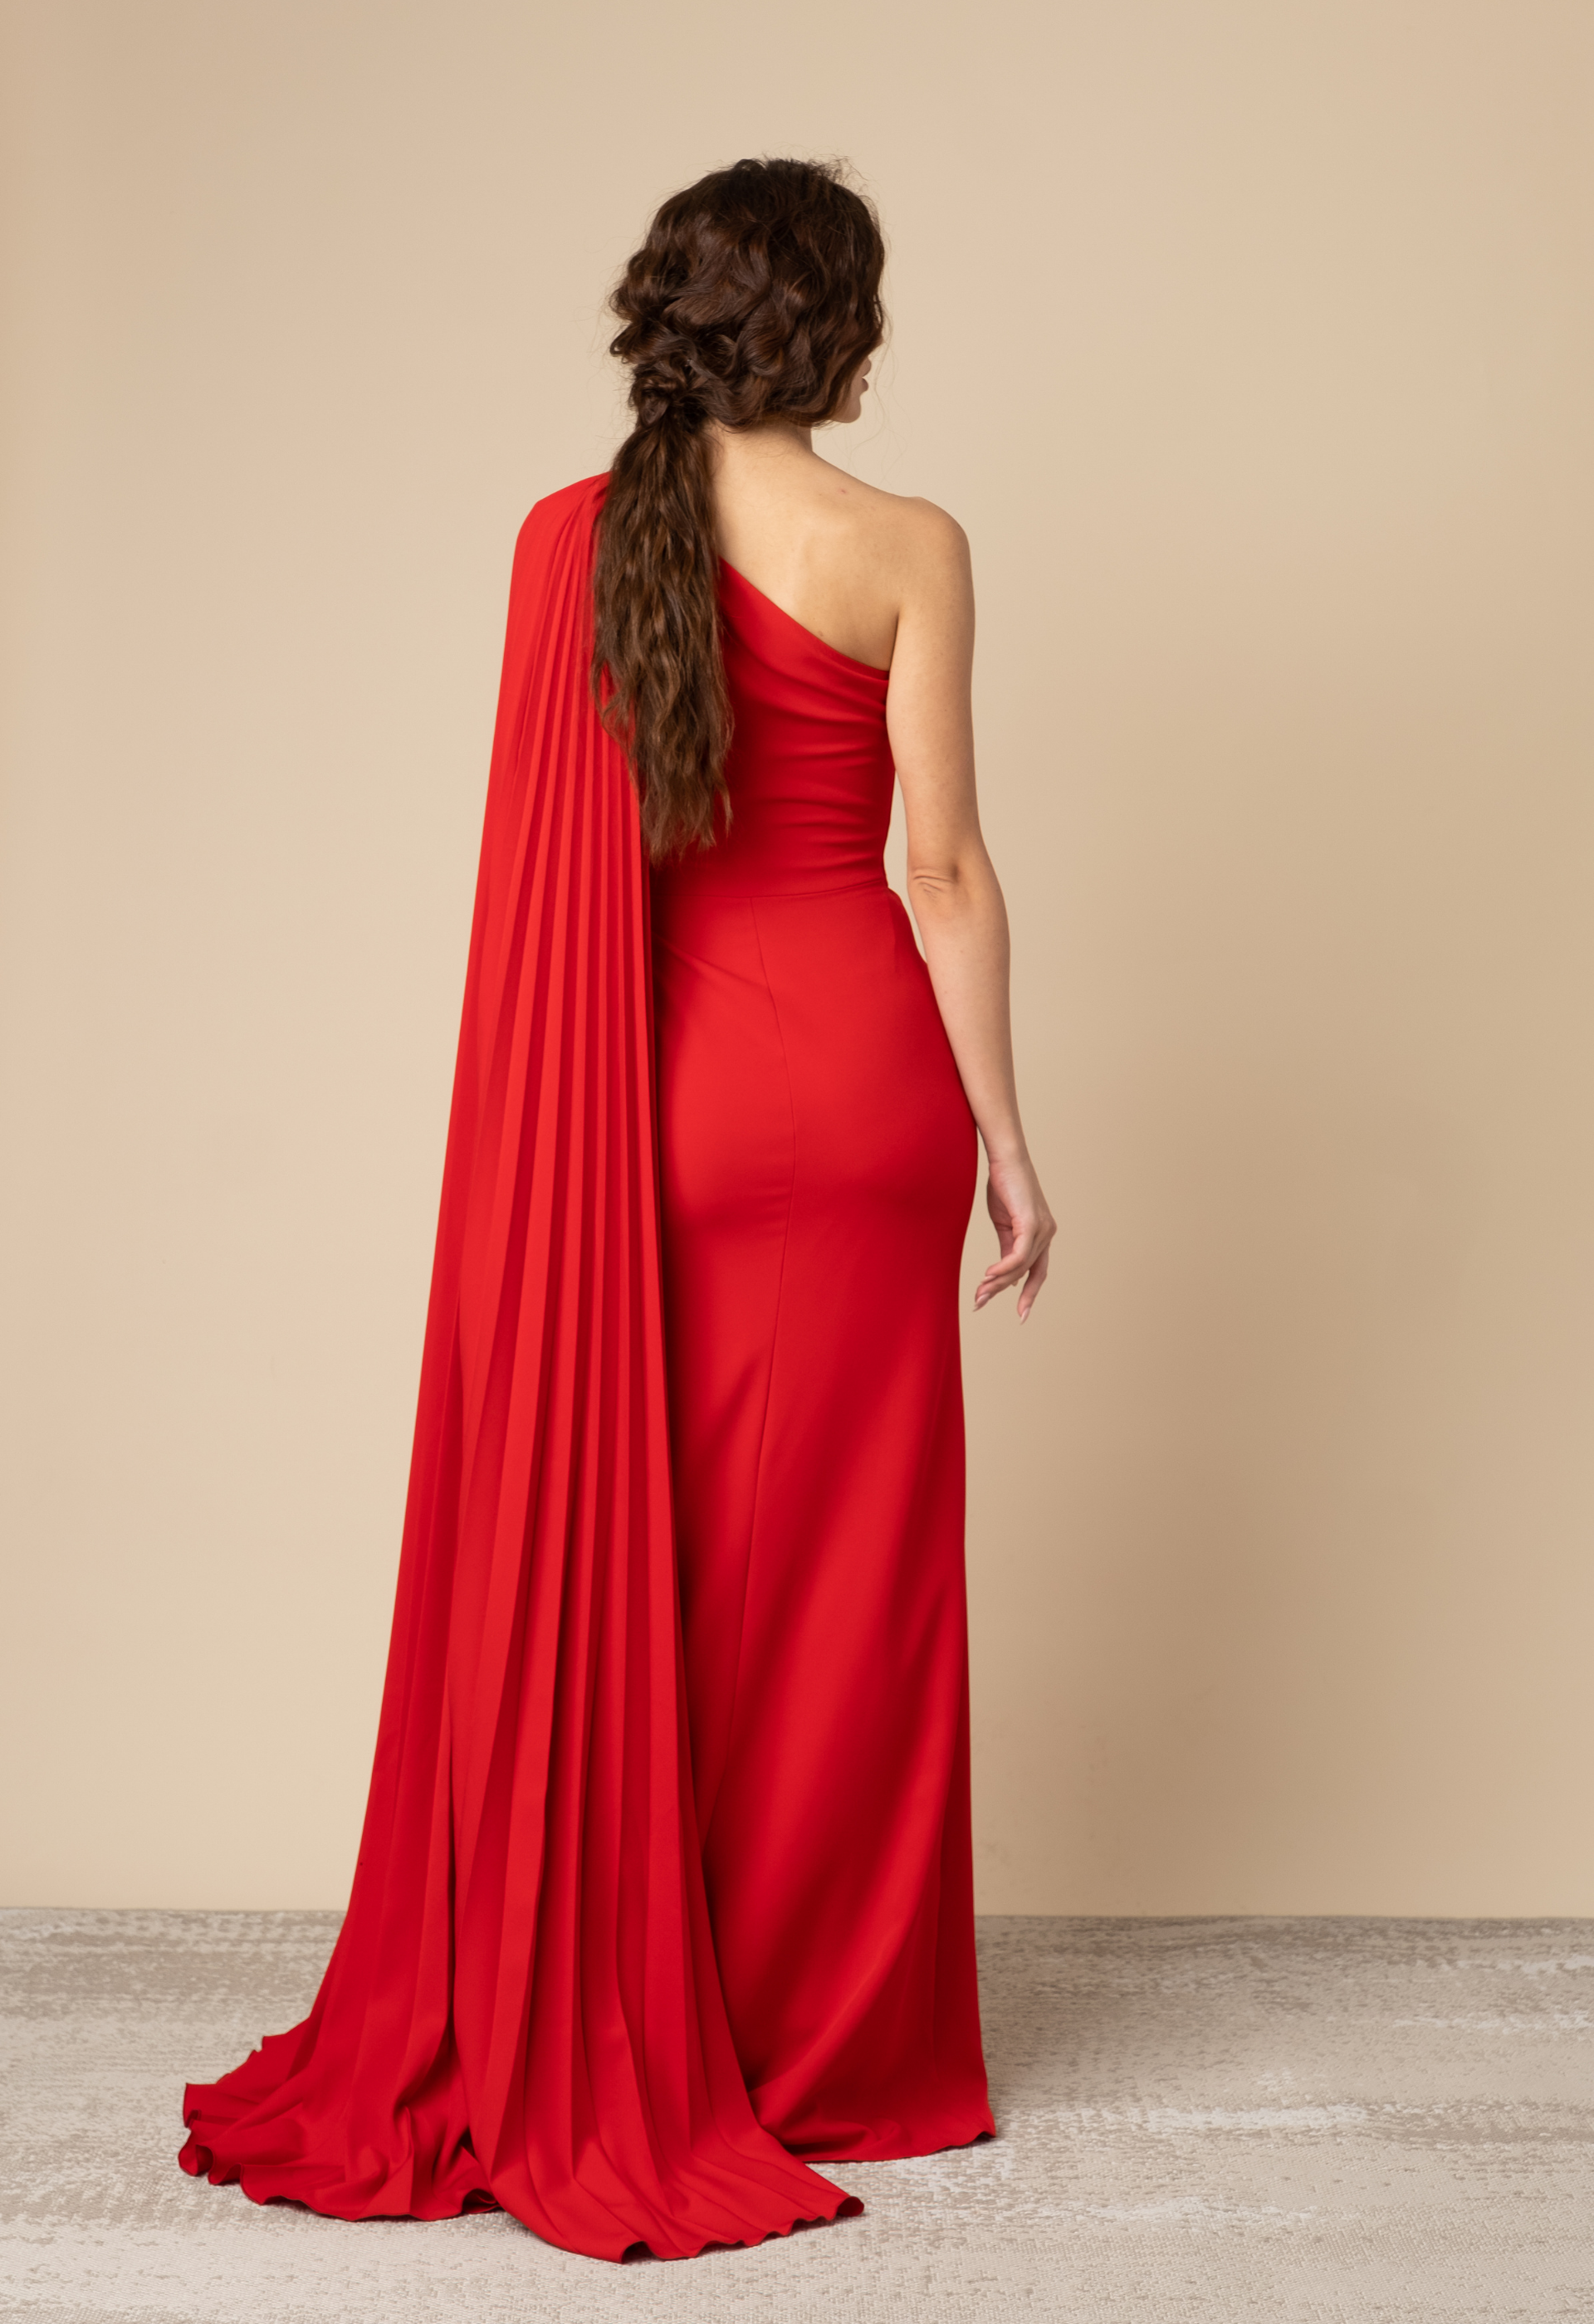 فستان كريب احمر بكسرات